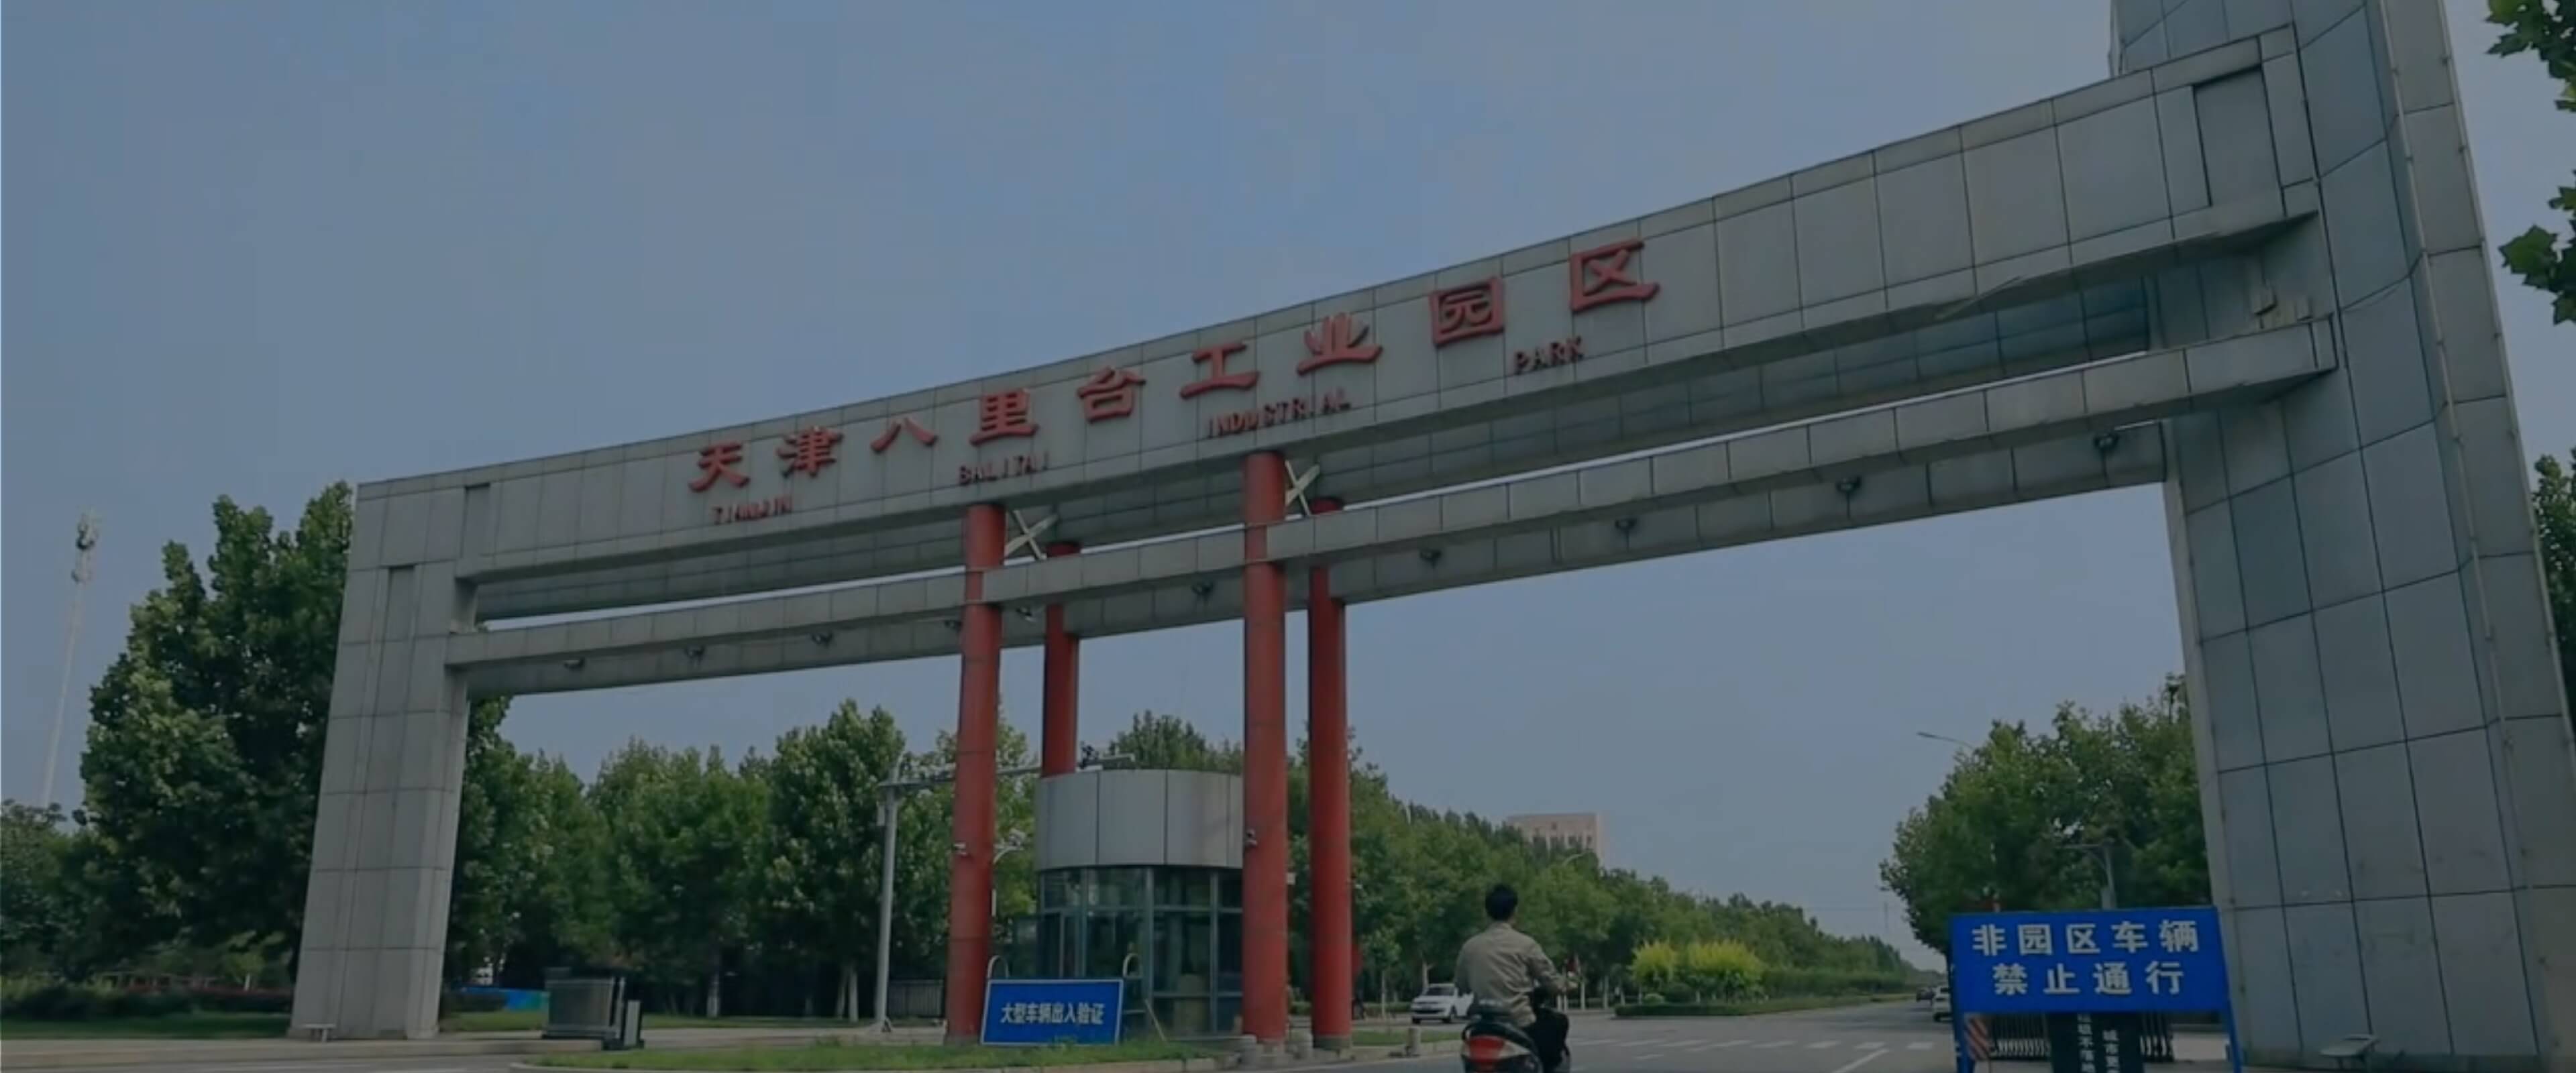 Tianjin Balitai Smart Security Dual-Carbon Park